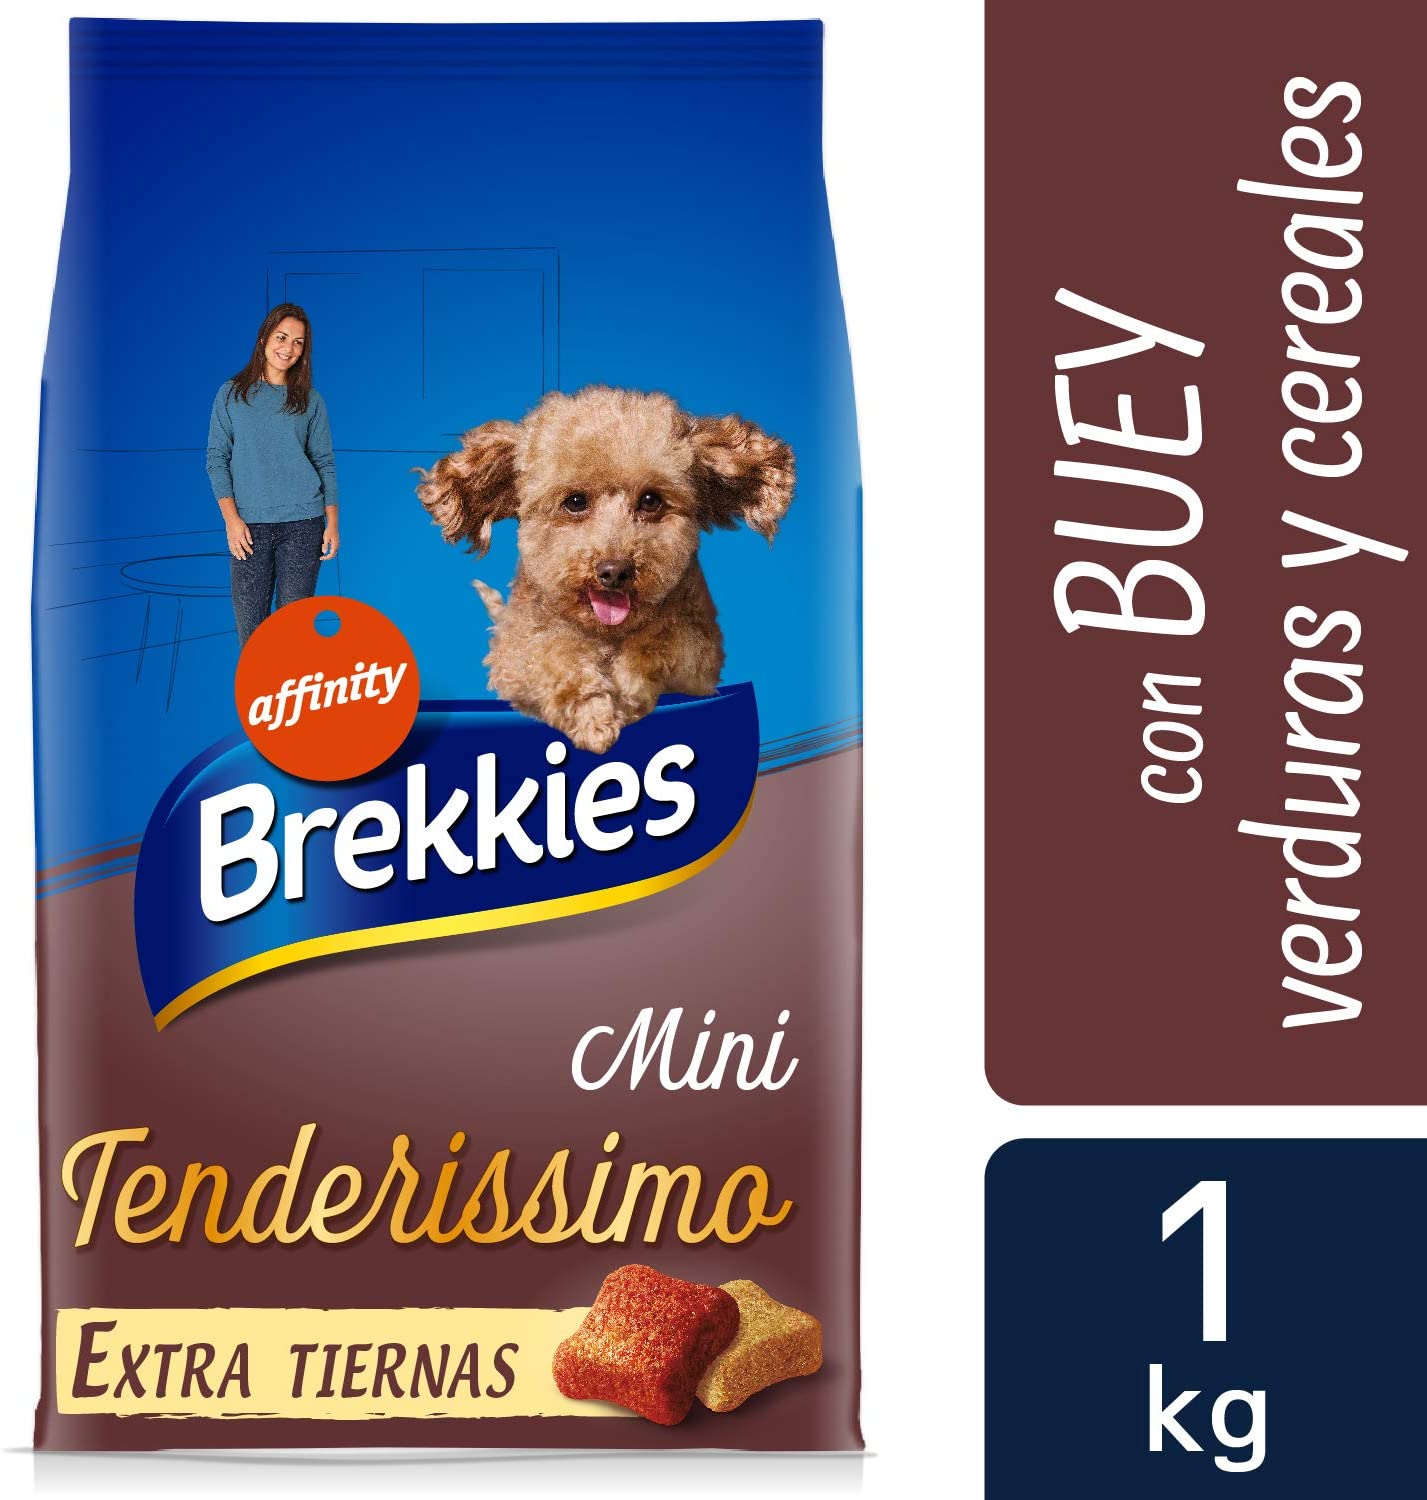  Brekkies Pienso Tenderissimo para Perros Mini con Buey, Verduras y Cereales - 1 kg 